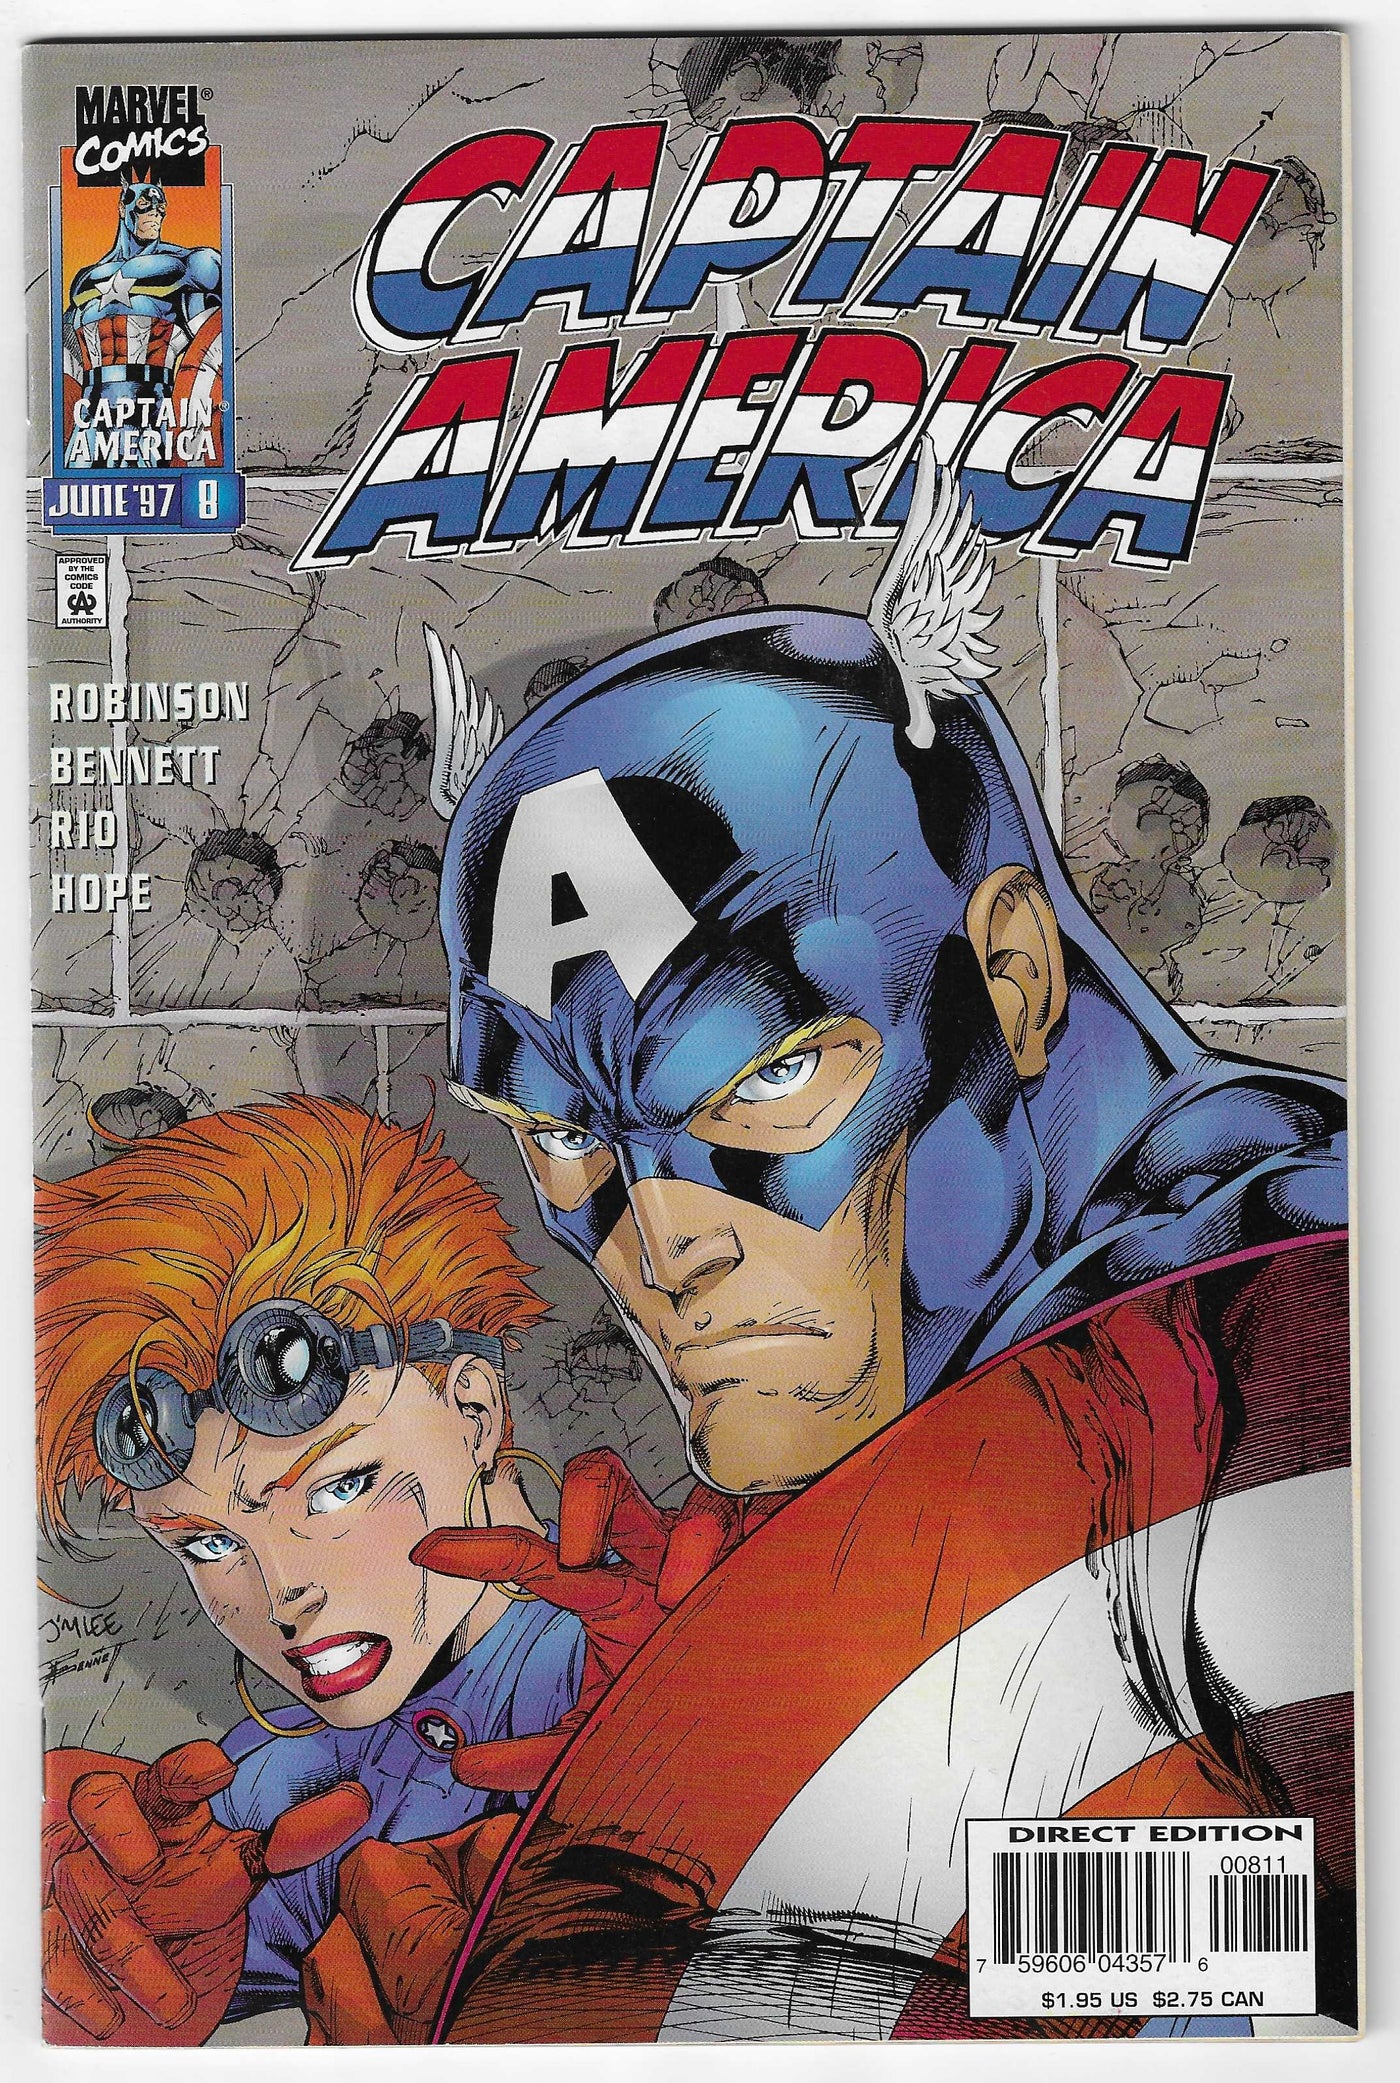 Captain America (Volume 2) #8